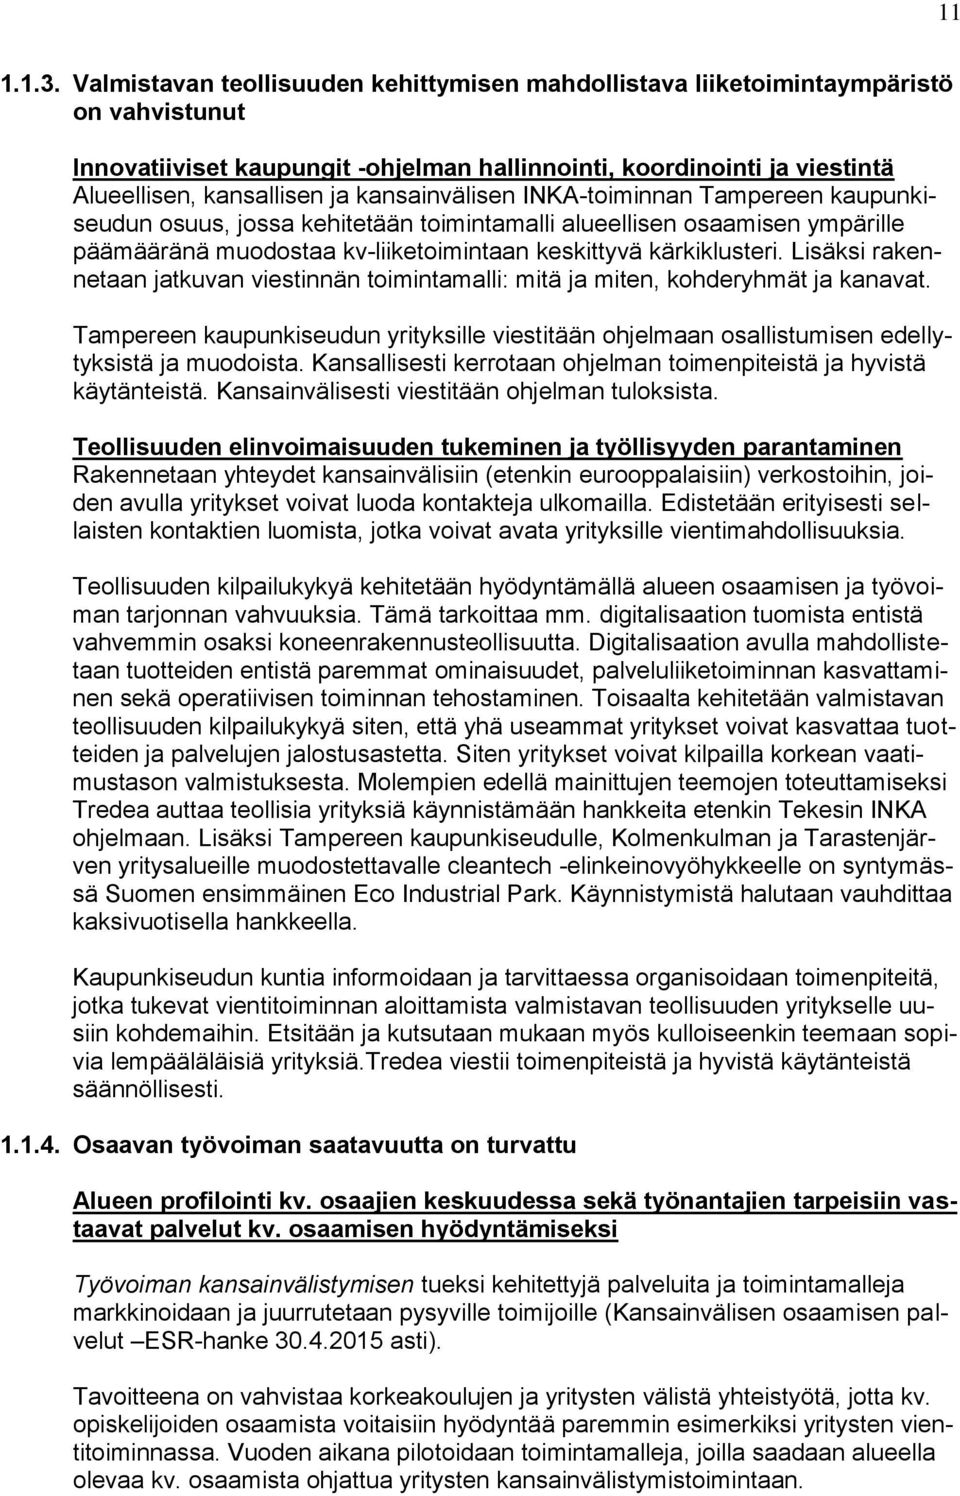 kansainvälisen INKA-toiminnan Tampereen kaupunkiseudun osuus, jossa kehitetään toimintamalli alueellisen osaamisen ympärille päämääränä muodostaa kv-liiketoimintaan keskittyvä kärkiklusteri.